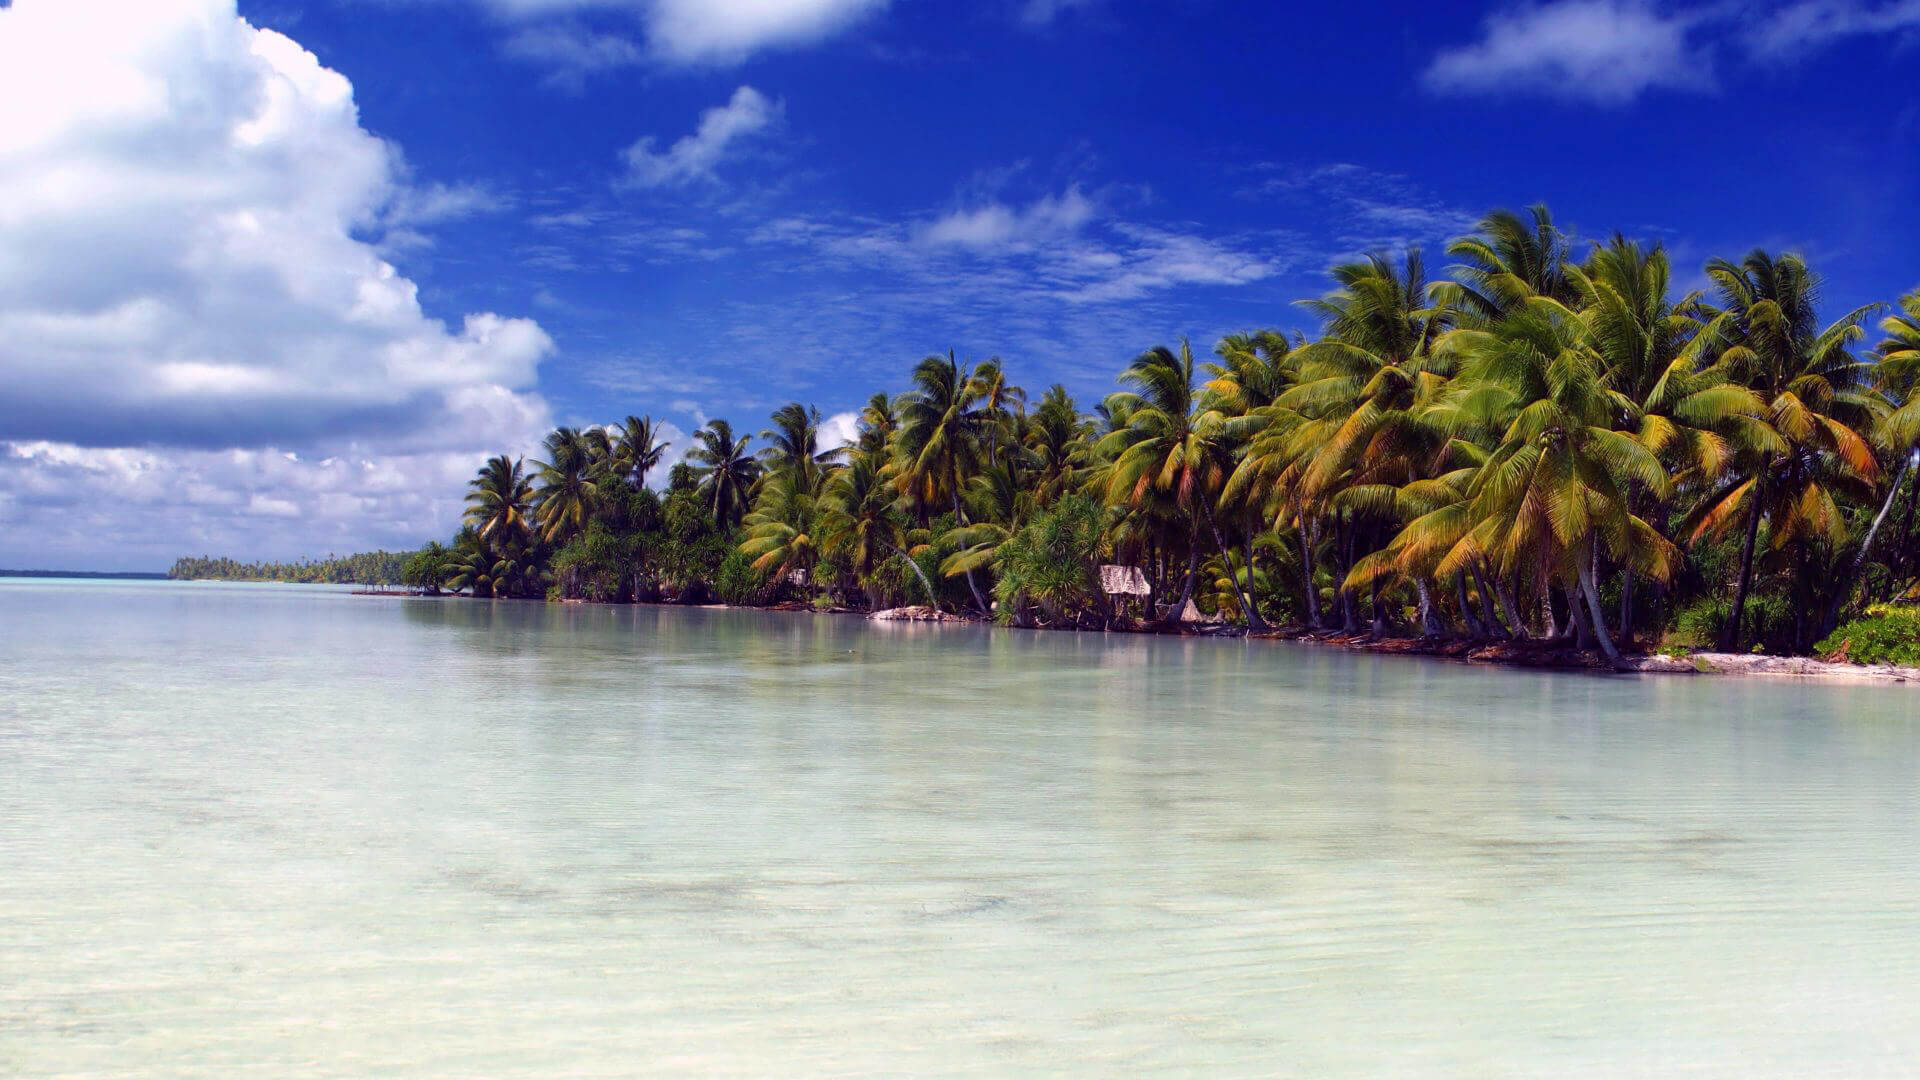 Kiribati travel guide - Travel S helper